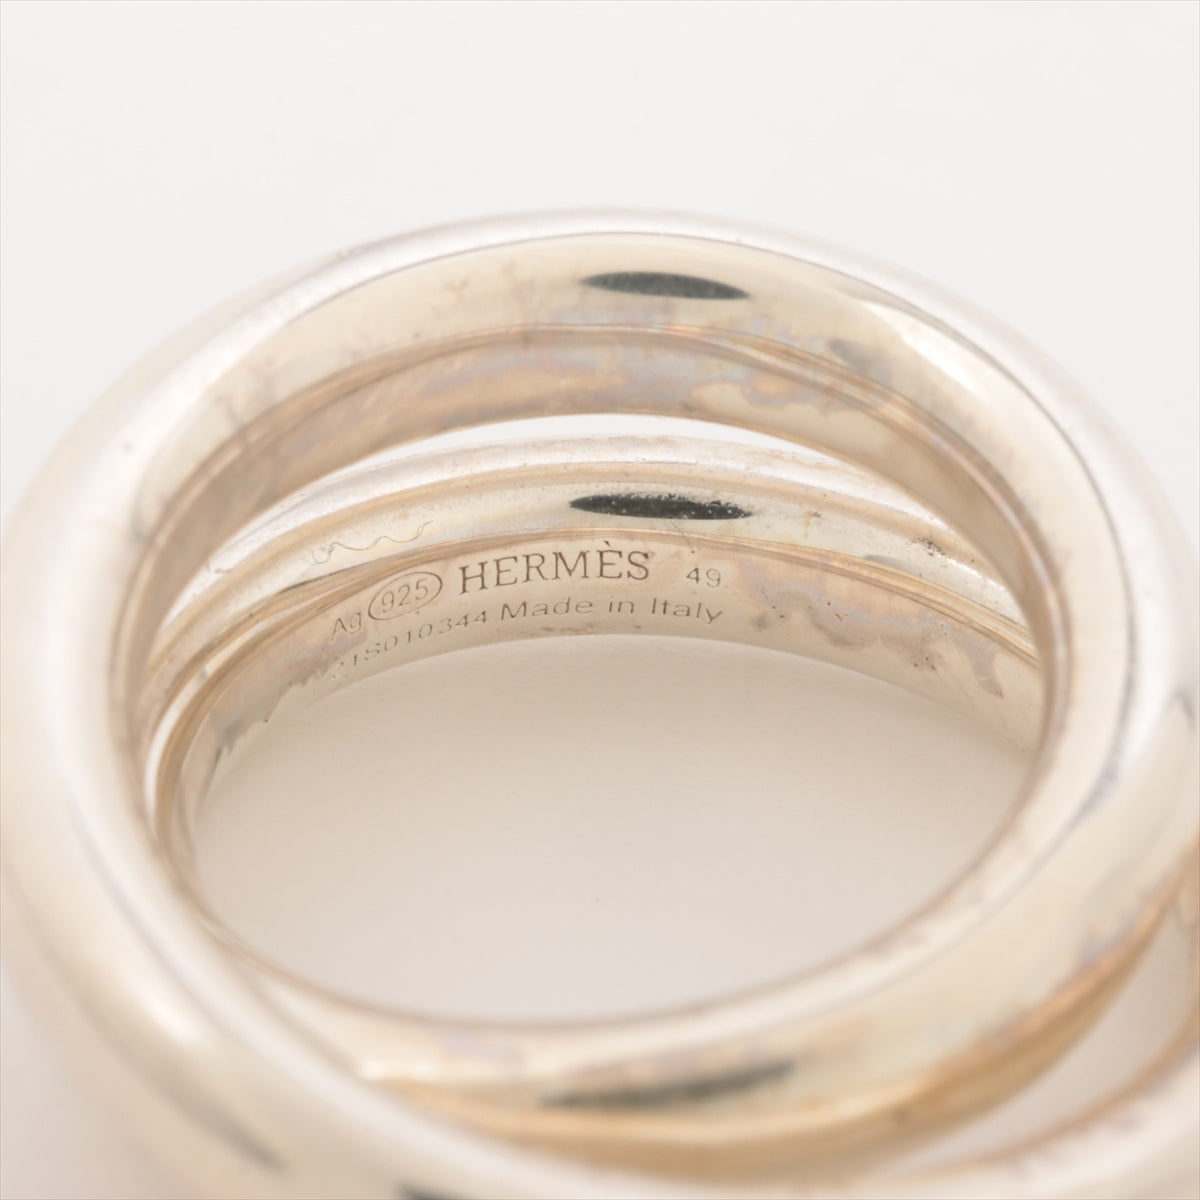 Hermes Vertige Ring 49 925 15.5g Silver